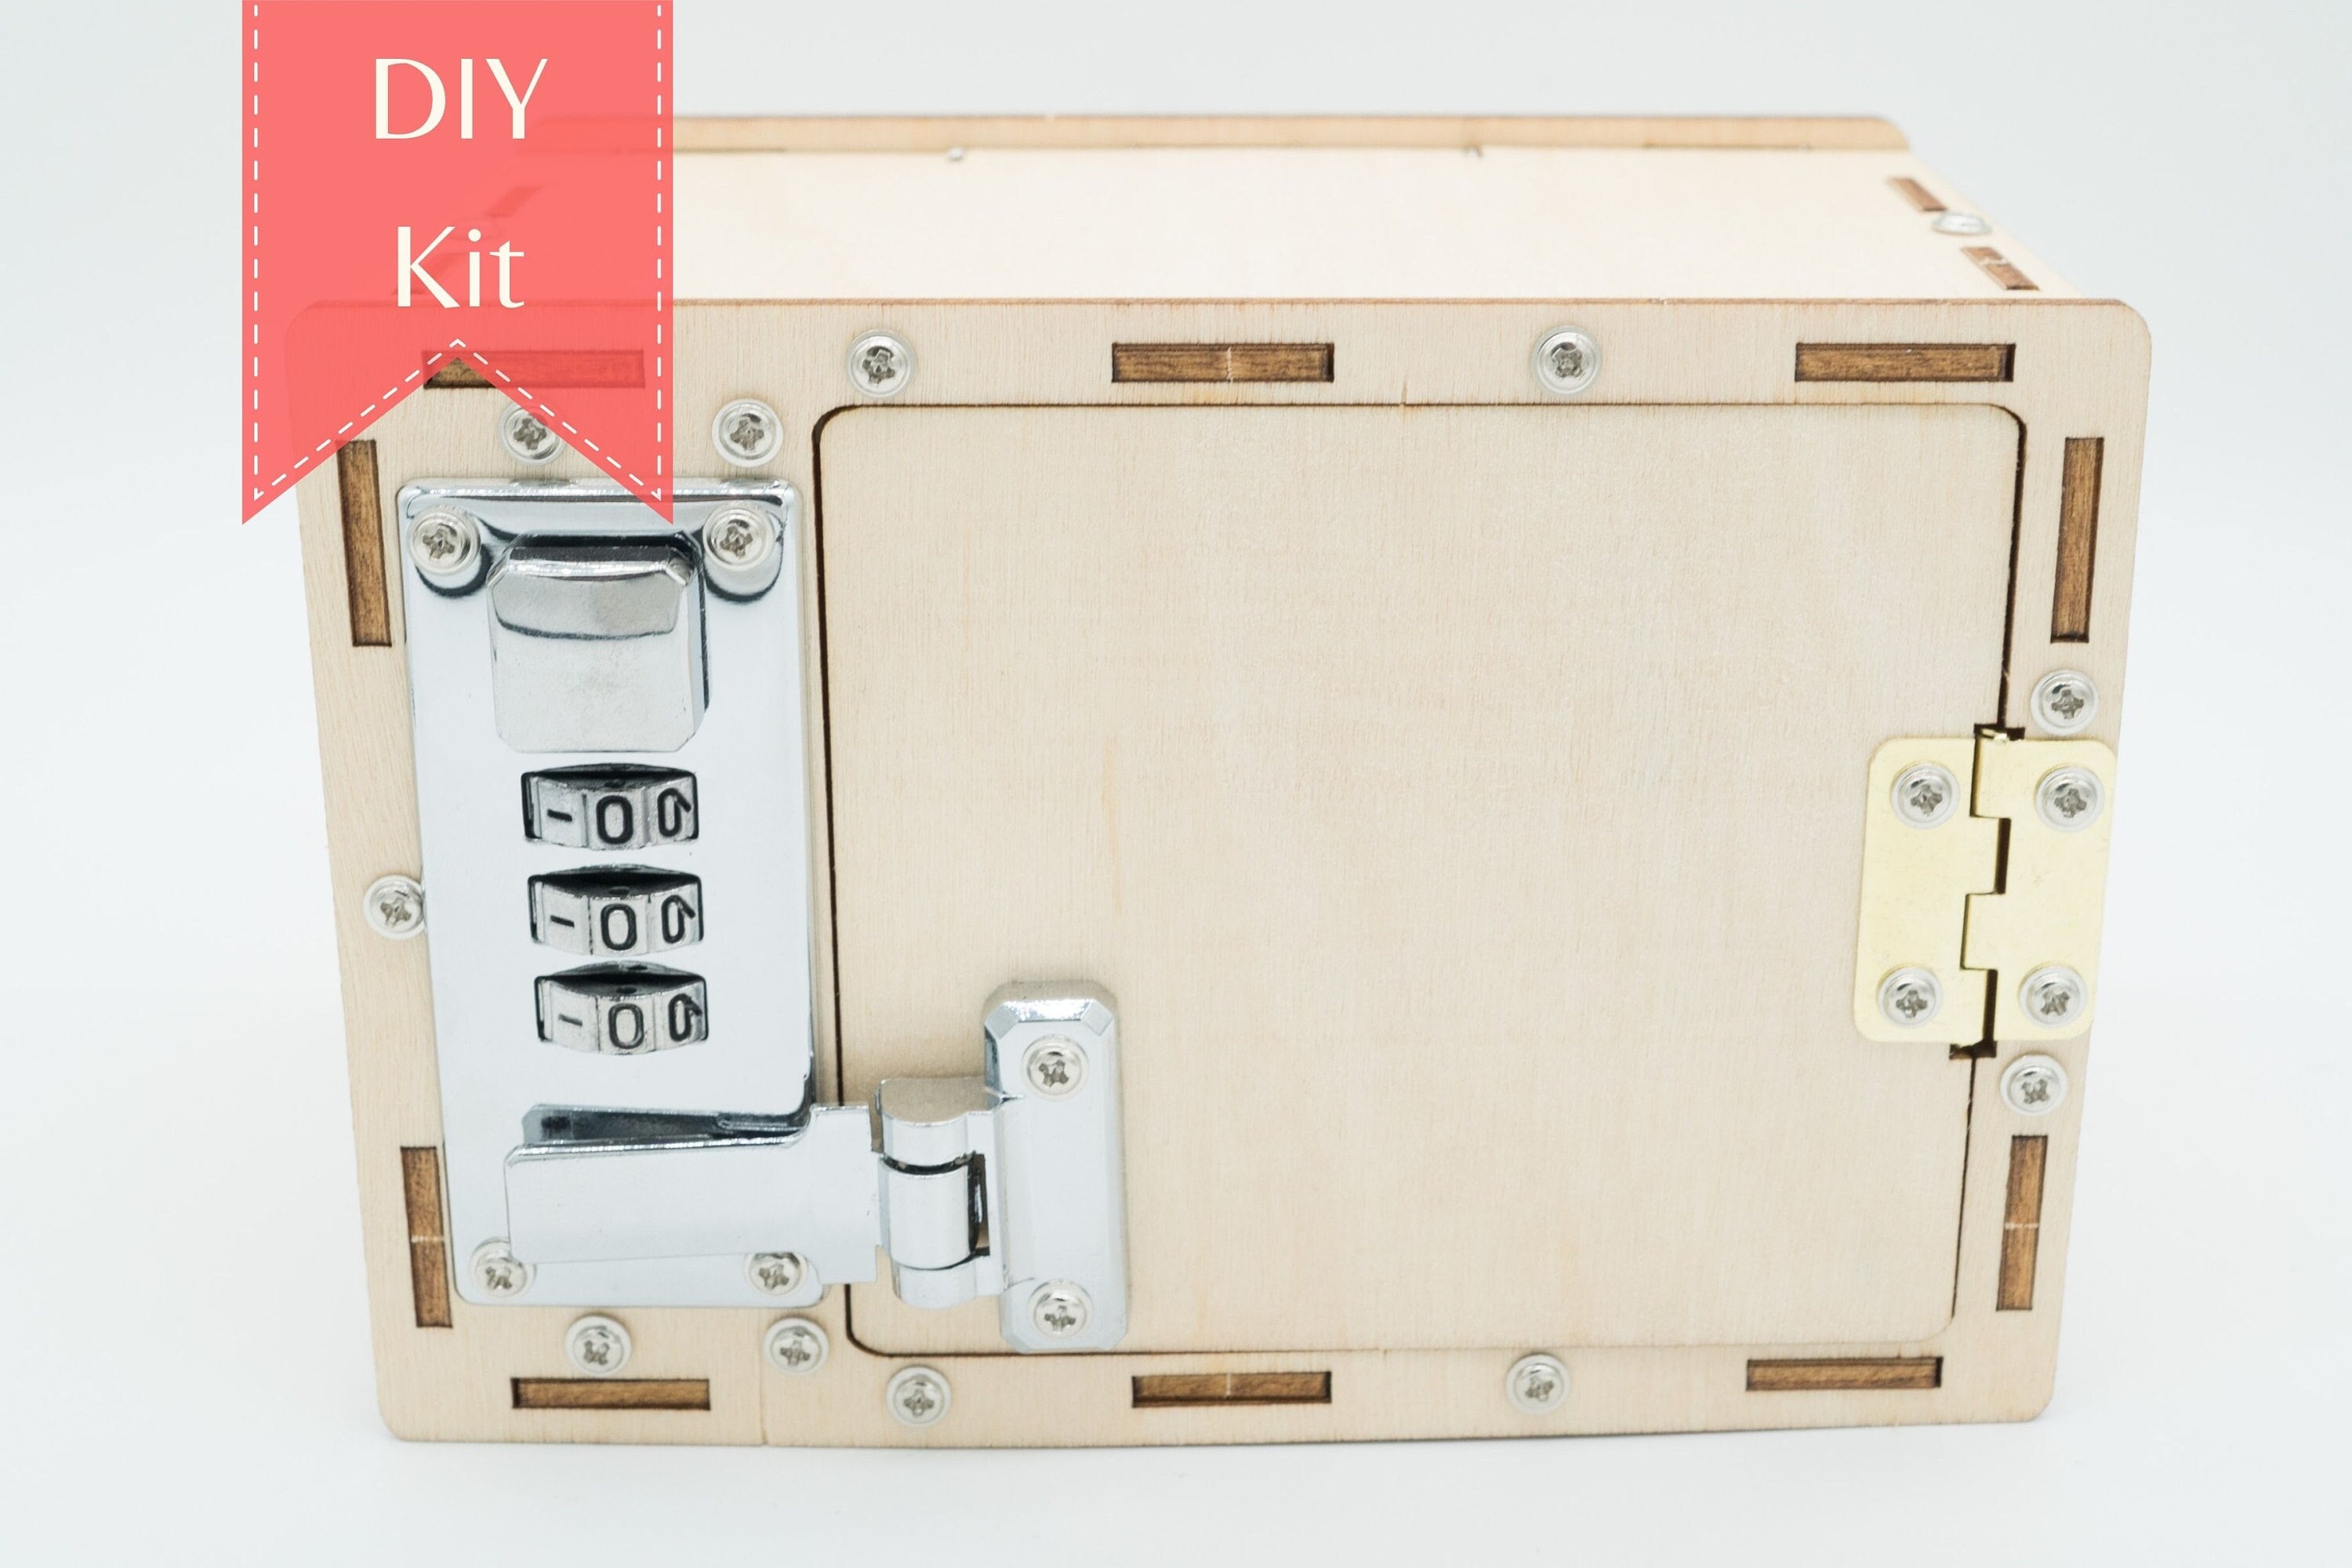 Kit de coffre-fort en bois 3D pour enfants, kit de bricolage pour